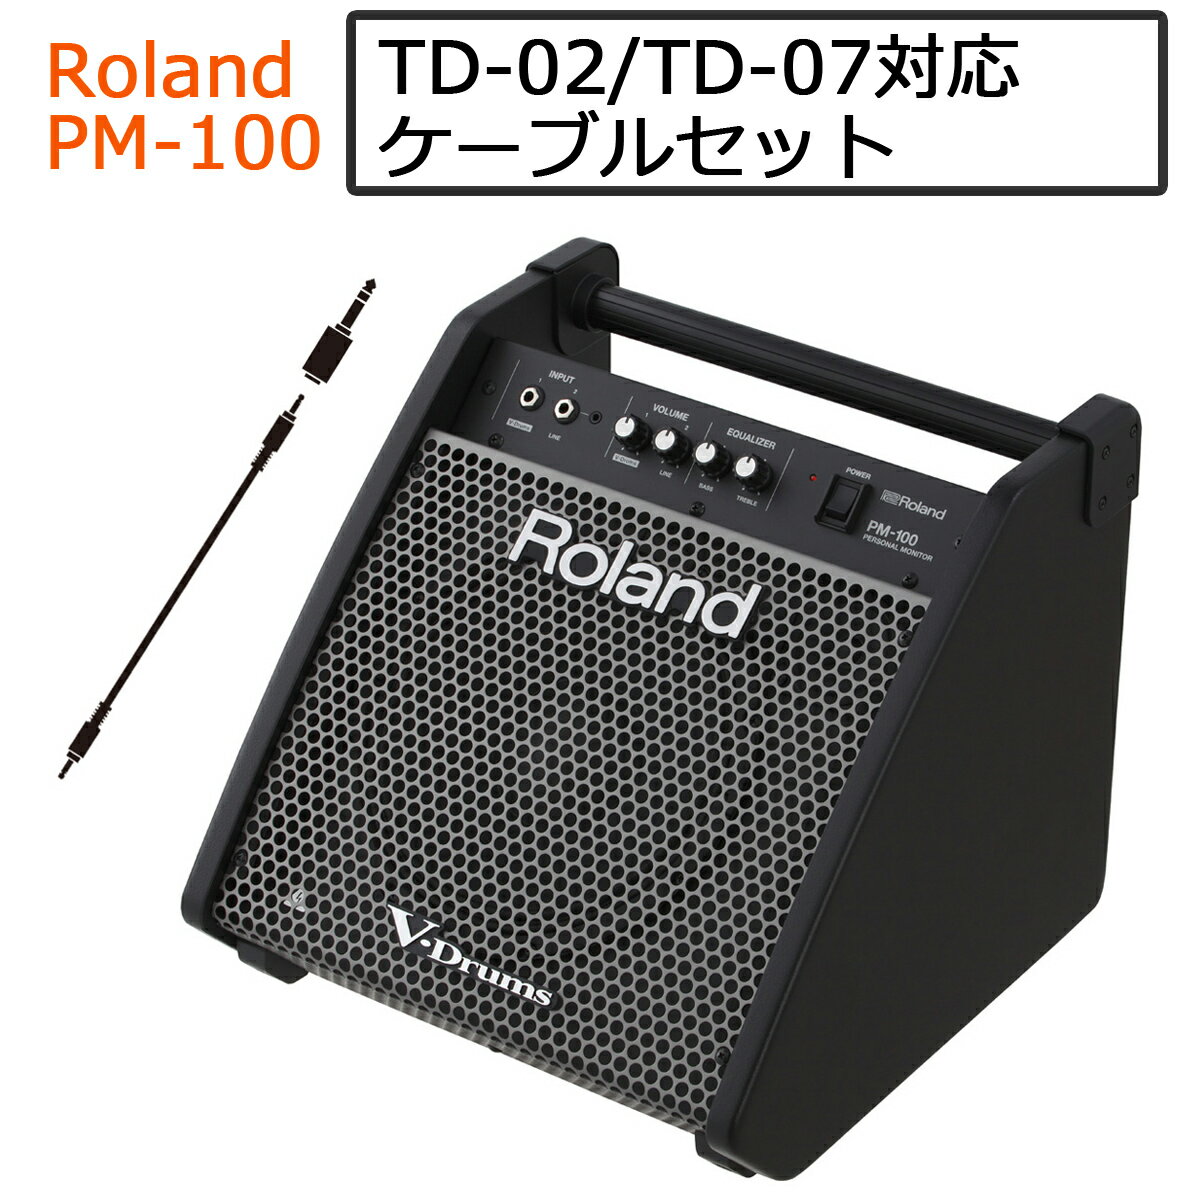 【あす楽対象商品】【TD-02対応】【TD-07対応】Roland / PM-100 電子ドラム用モニタースピーカー ステレオミニプラグケーブルセット【PNG】